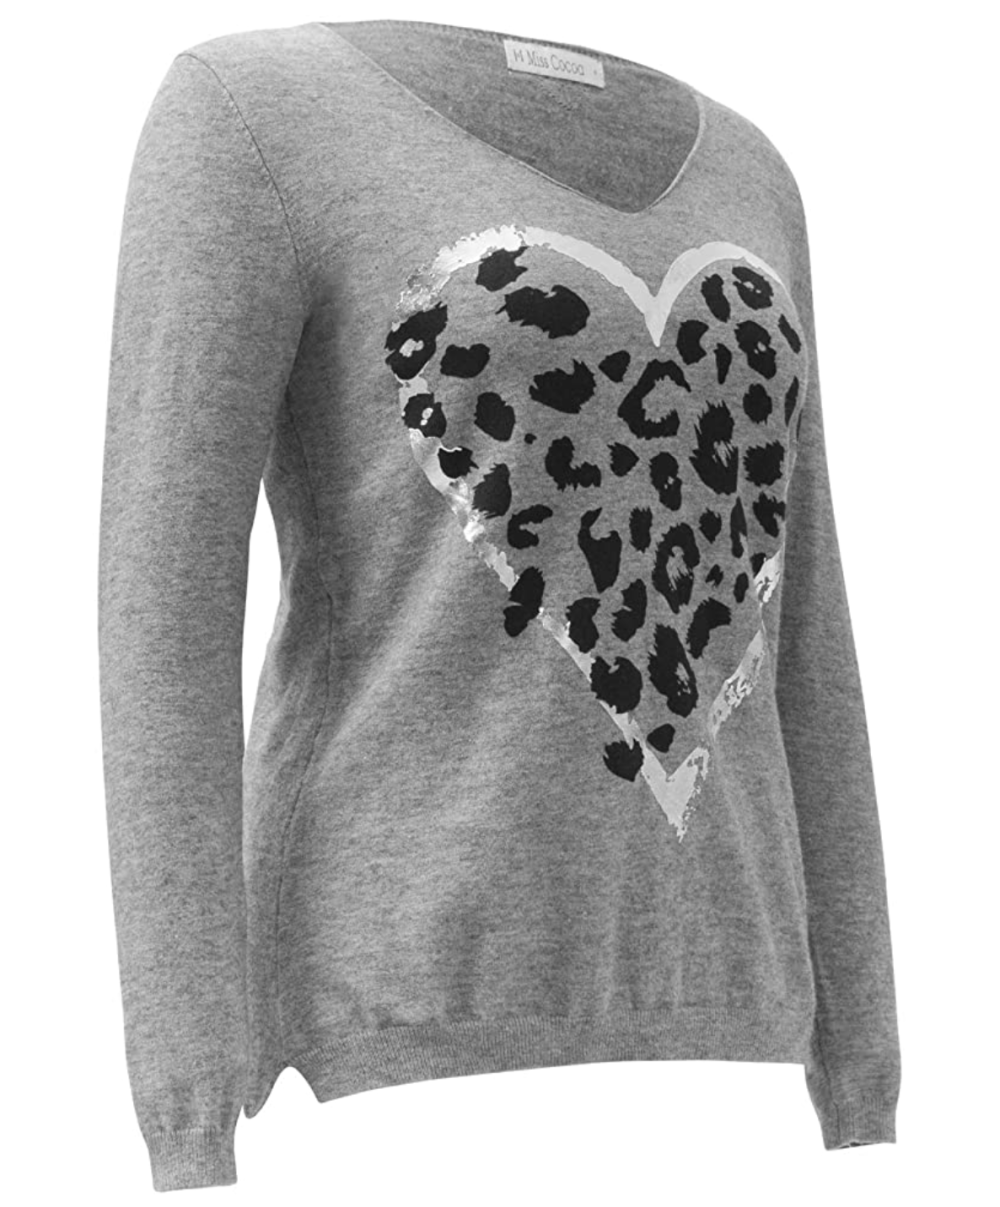 Miss Cocoa Jeans Women's Heart Leopard Print Sweater